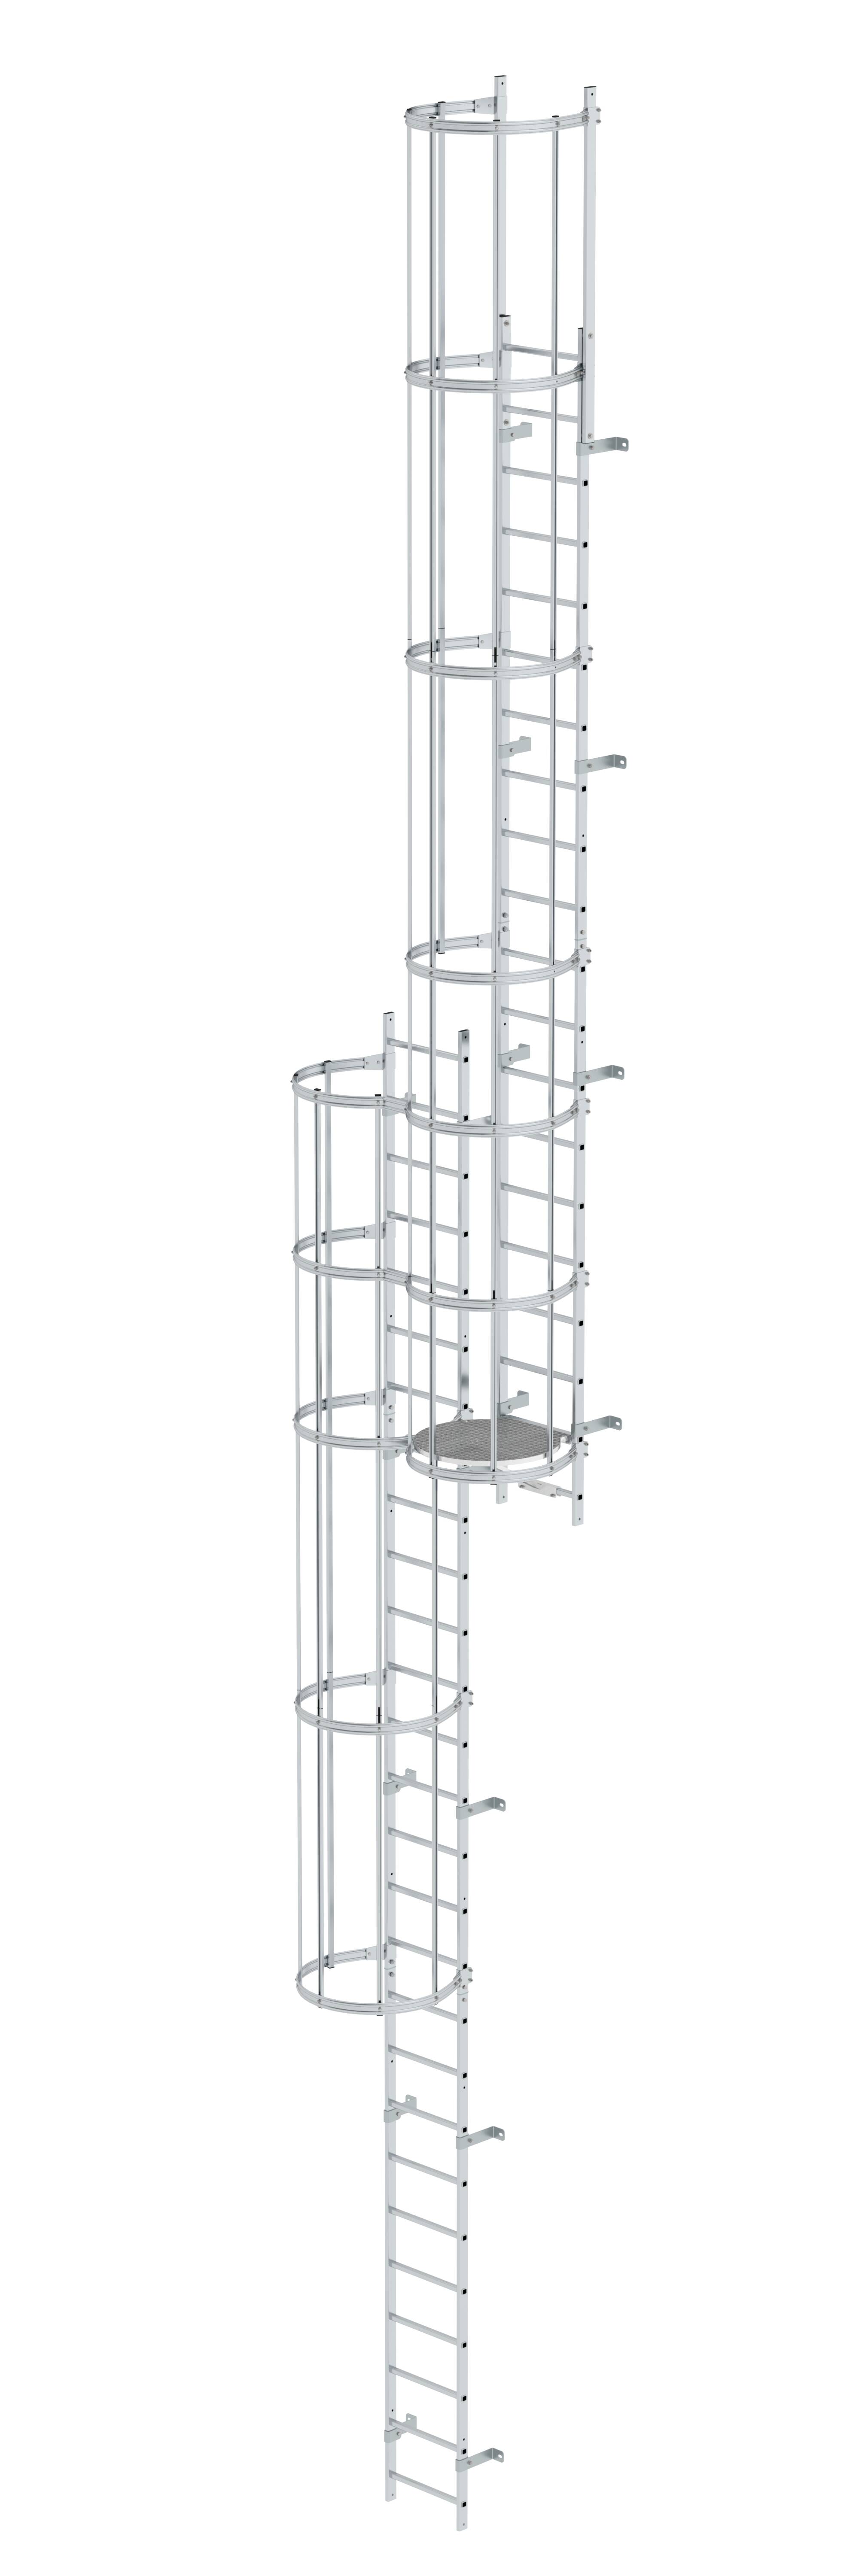 MUNK Mehrzügige Steigleiter mit Rückenschutz (Notleiter) Aluminium blank  